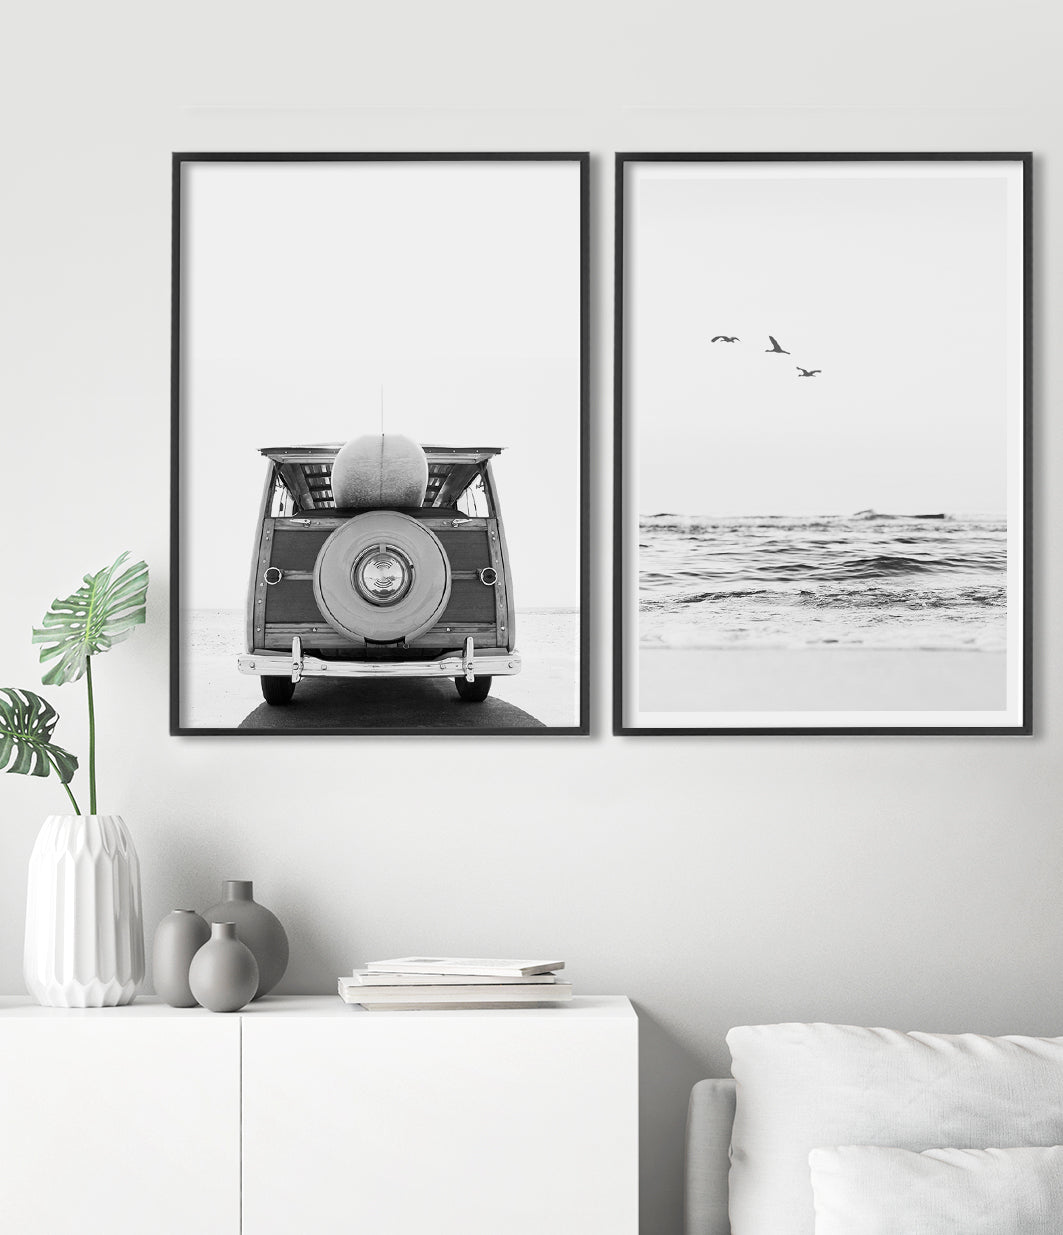 Set of 2 Prints - Serenity Beach and Vintage Surf Van